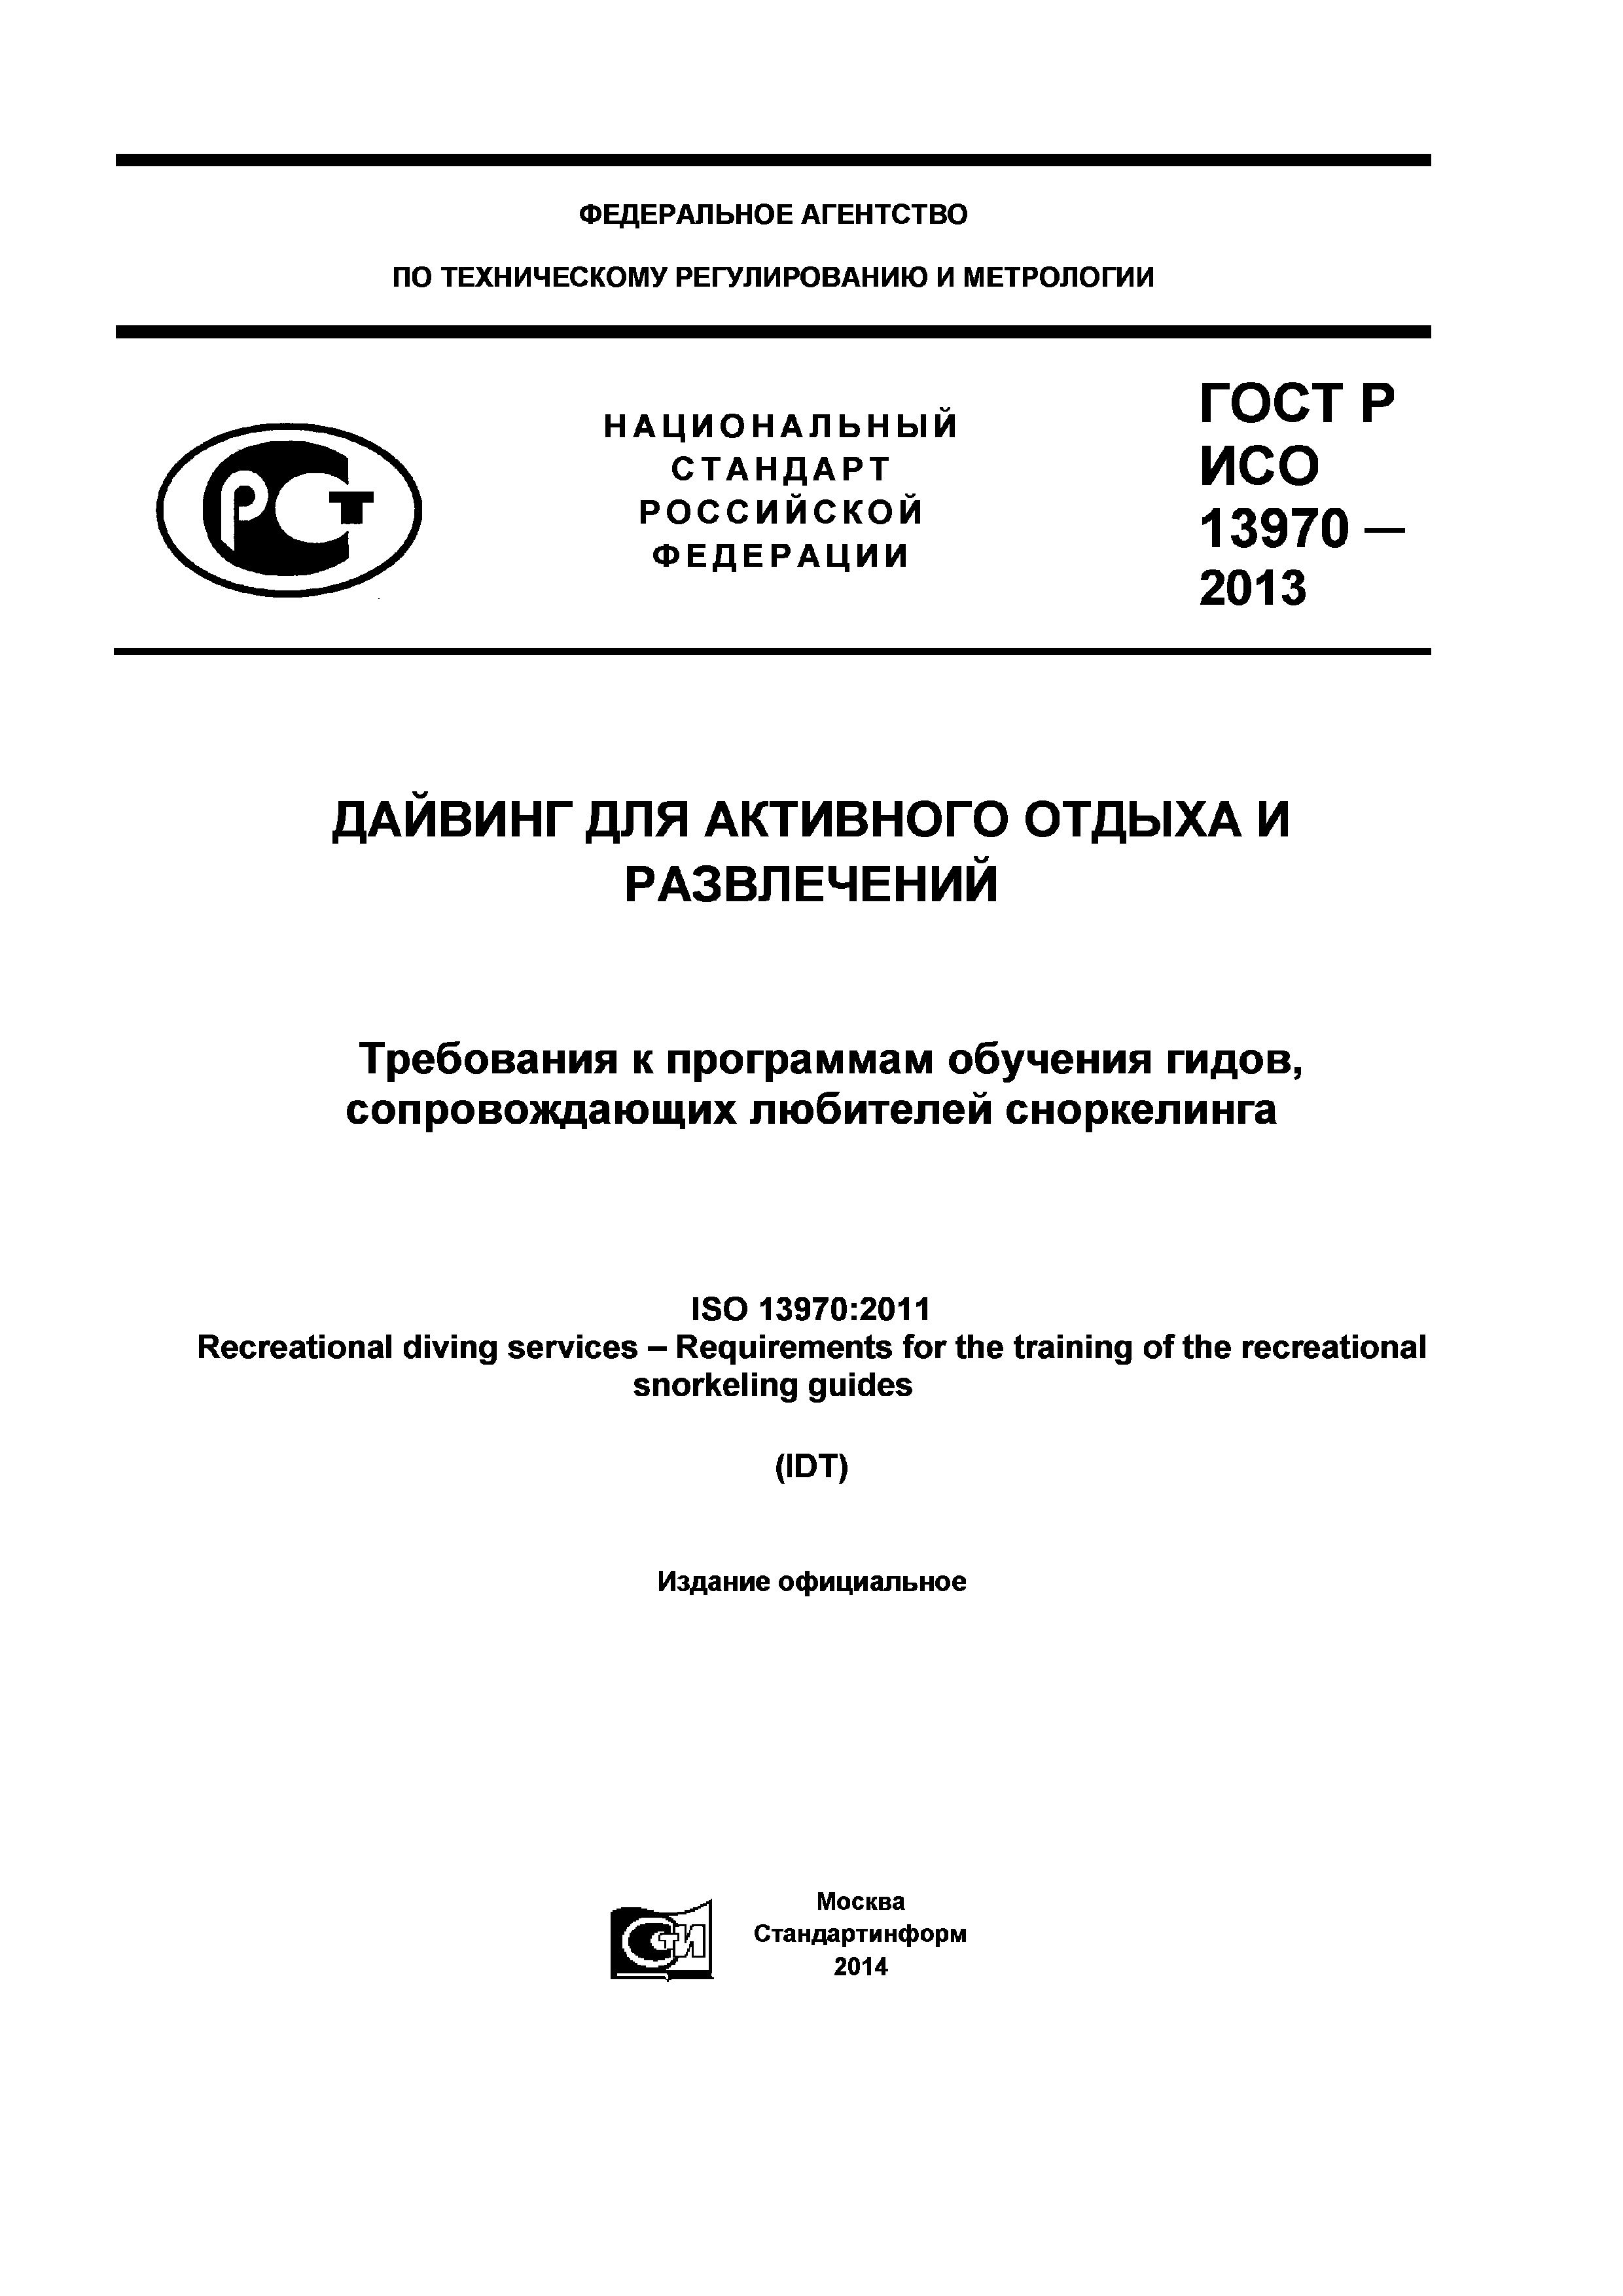 ГОСТ Р ИСО 13970-2013